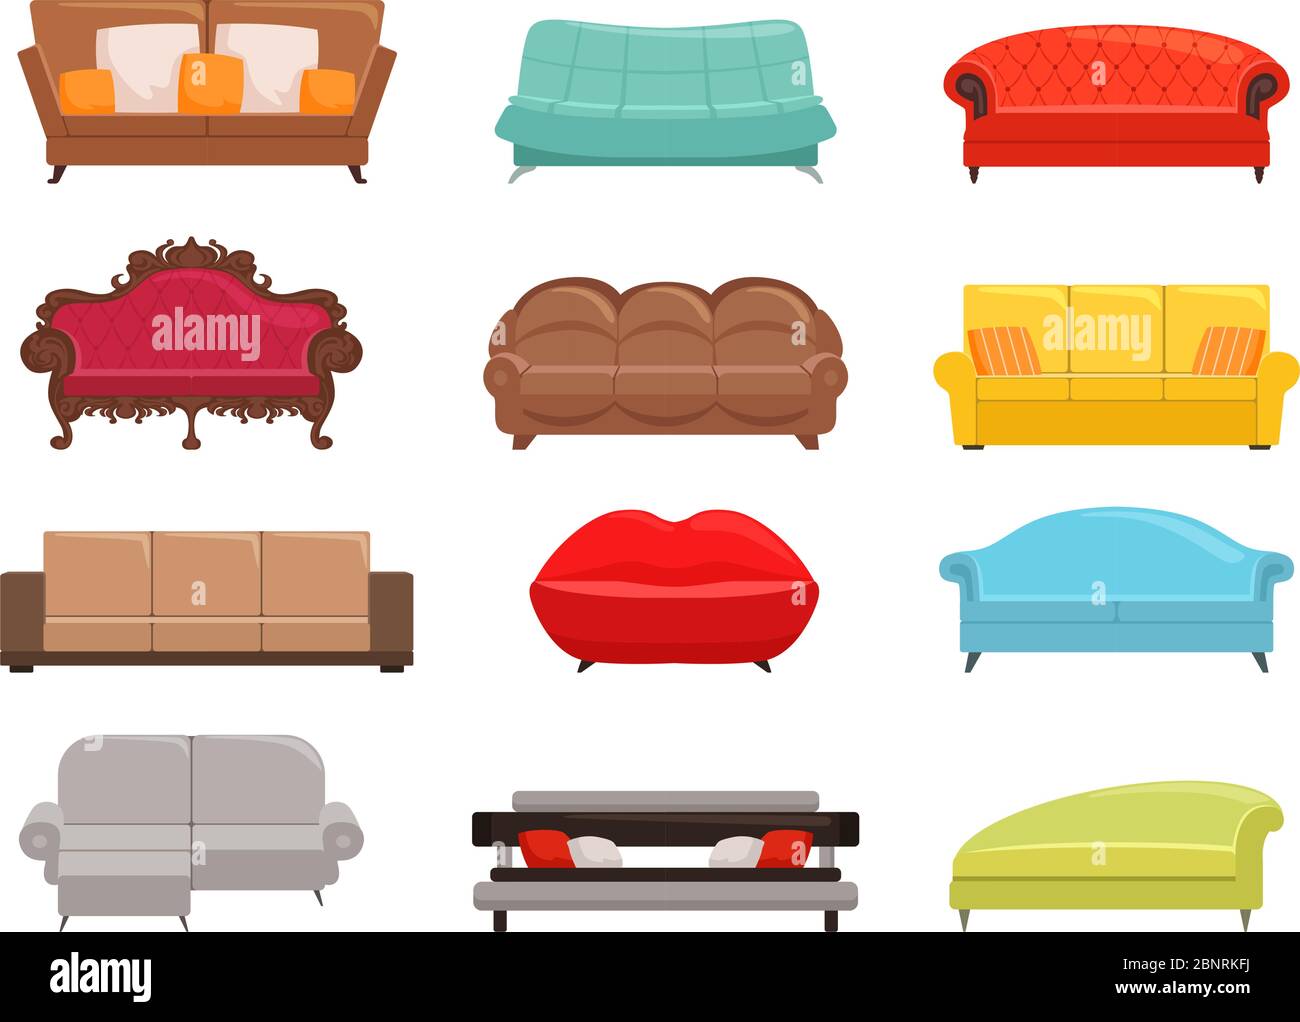 Colección de sofás. Cómodo sofá y sofá-cama, interior de moda sofás muebles, la casa moderna taps vector ilustración de colores Ilustración del Vector